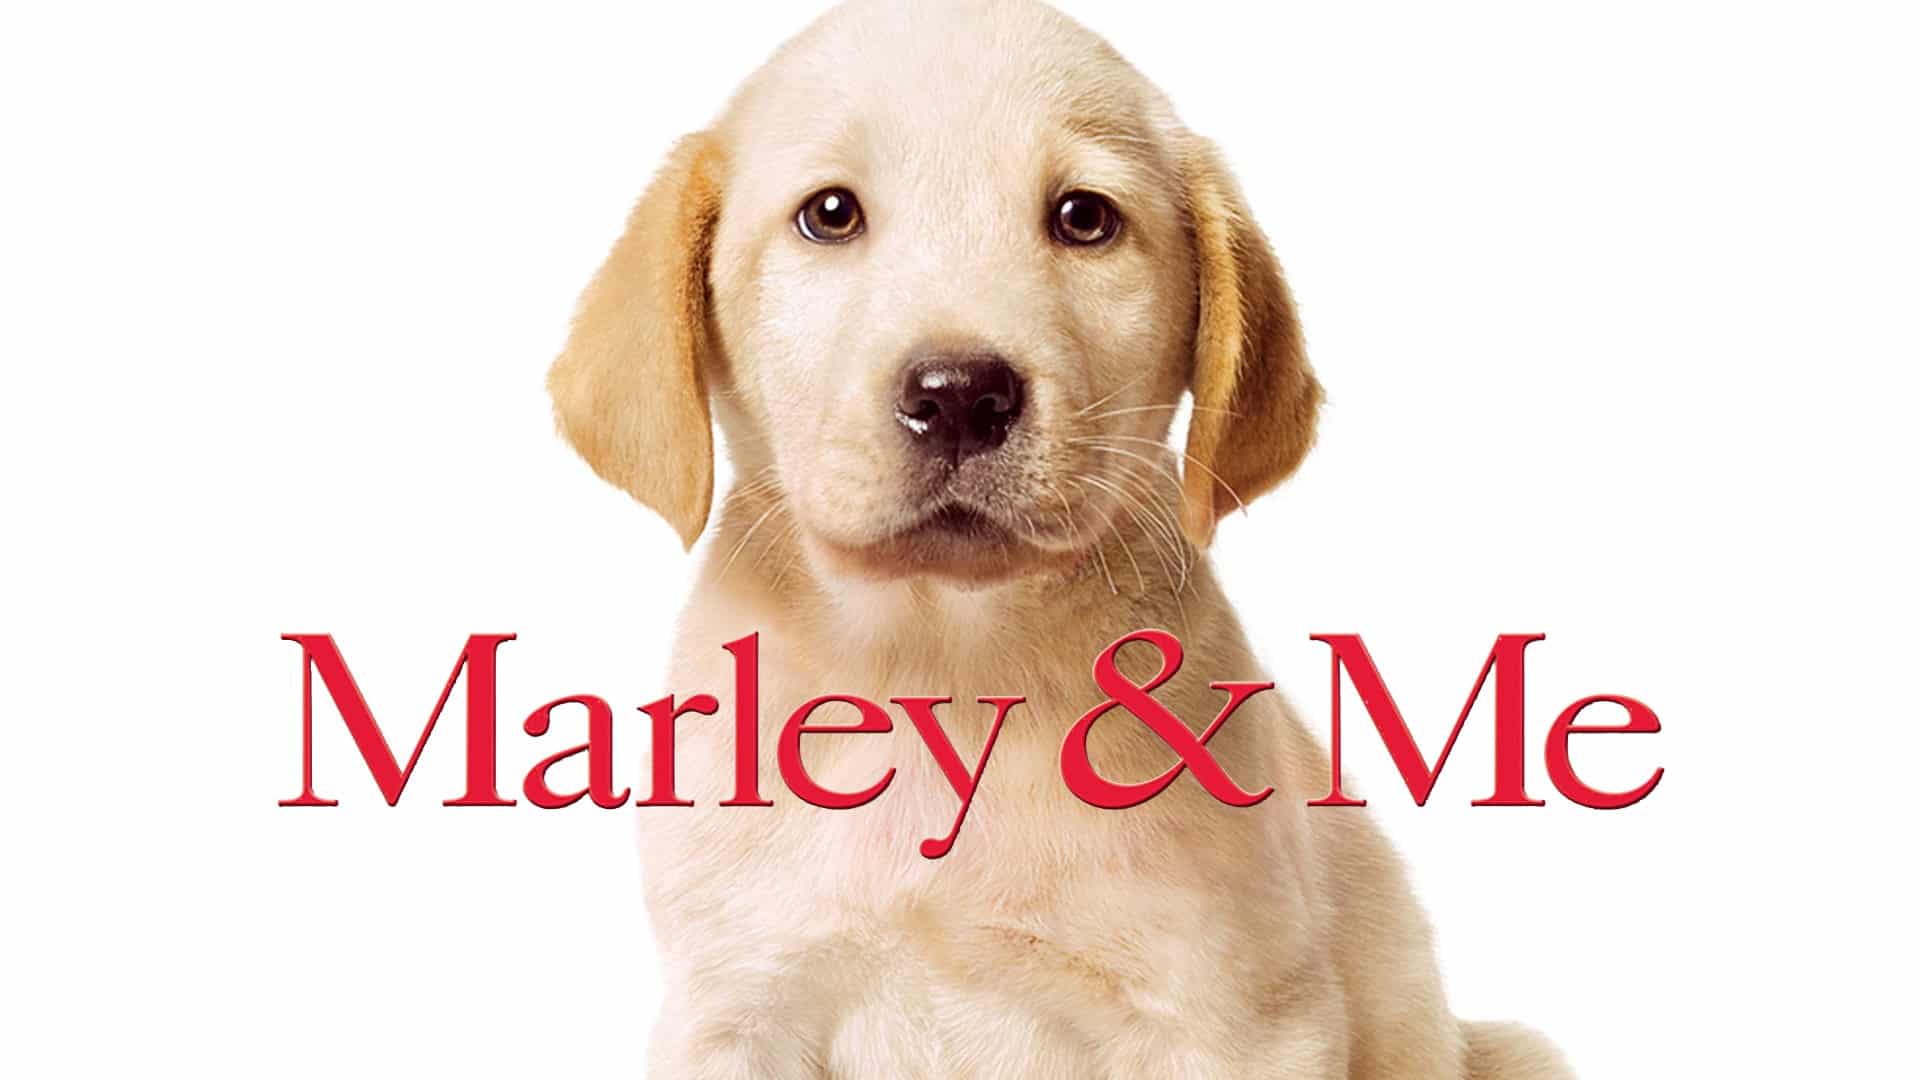 Io & Marley, cinematographe.it